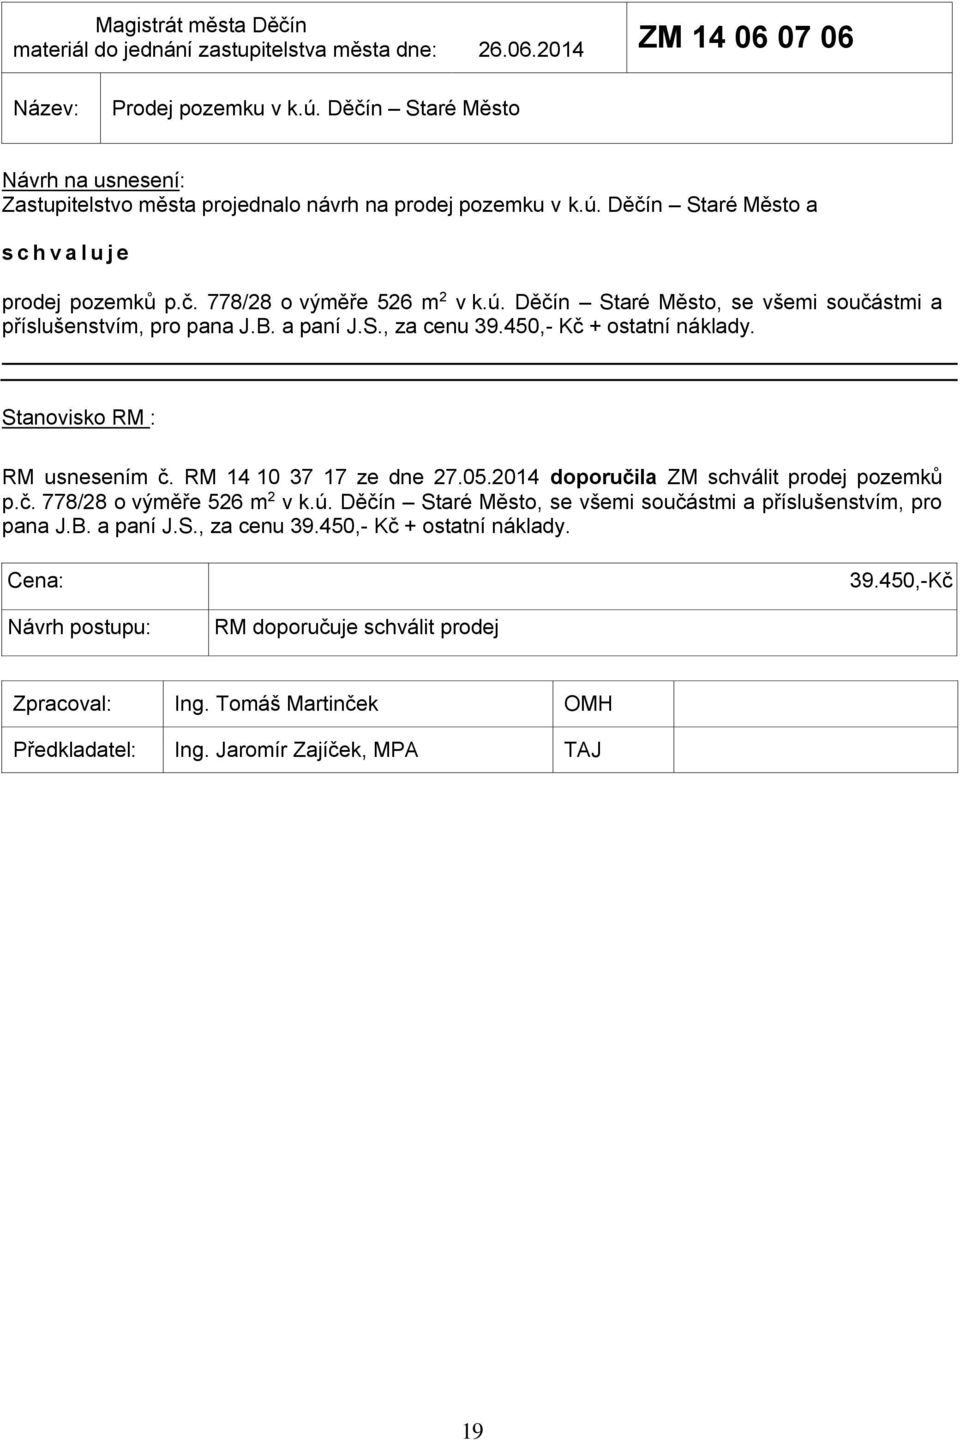 B. a paní J.S., za cenu 39.450,- Kč + ostatní náklady. RM usnesením č. RM 14 10 37 17 ze dne 27.05.2014 doporučila ZM schválit prodej pozemků p.č. 778/28 o výměře 526 m 2 v k.